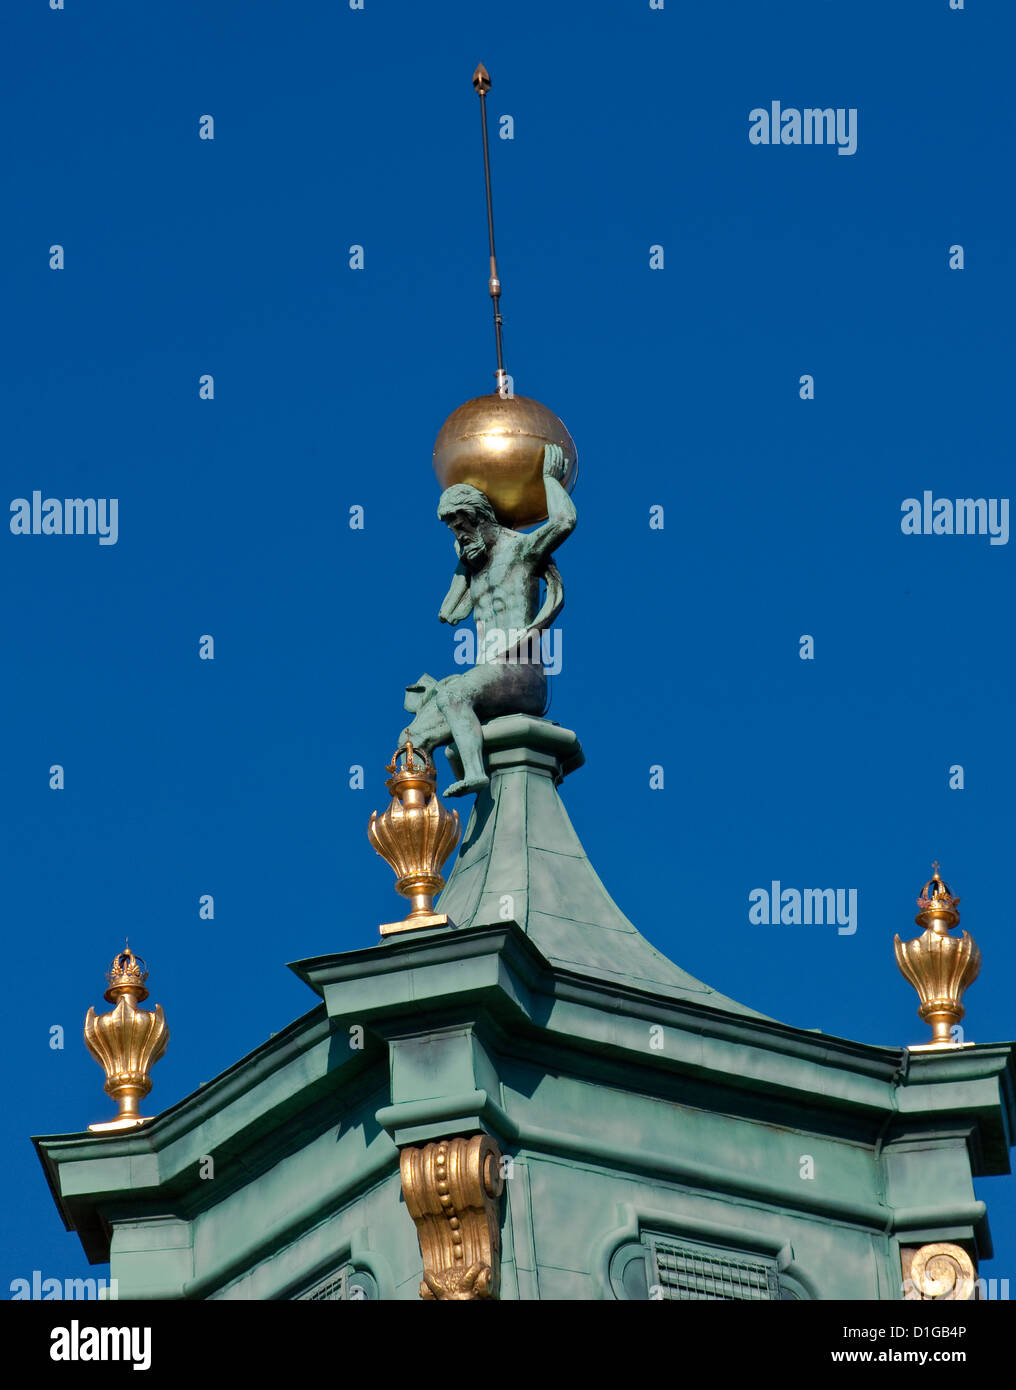 La figura di Atlas tenendo la sfera celeste a guglia barocca sulla torre a Wilanów Palace a Varsavia, Polonia Foto Stock